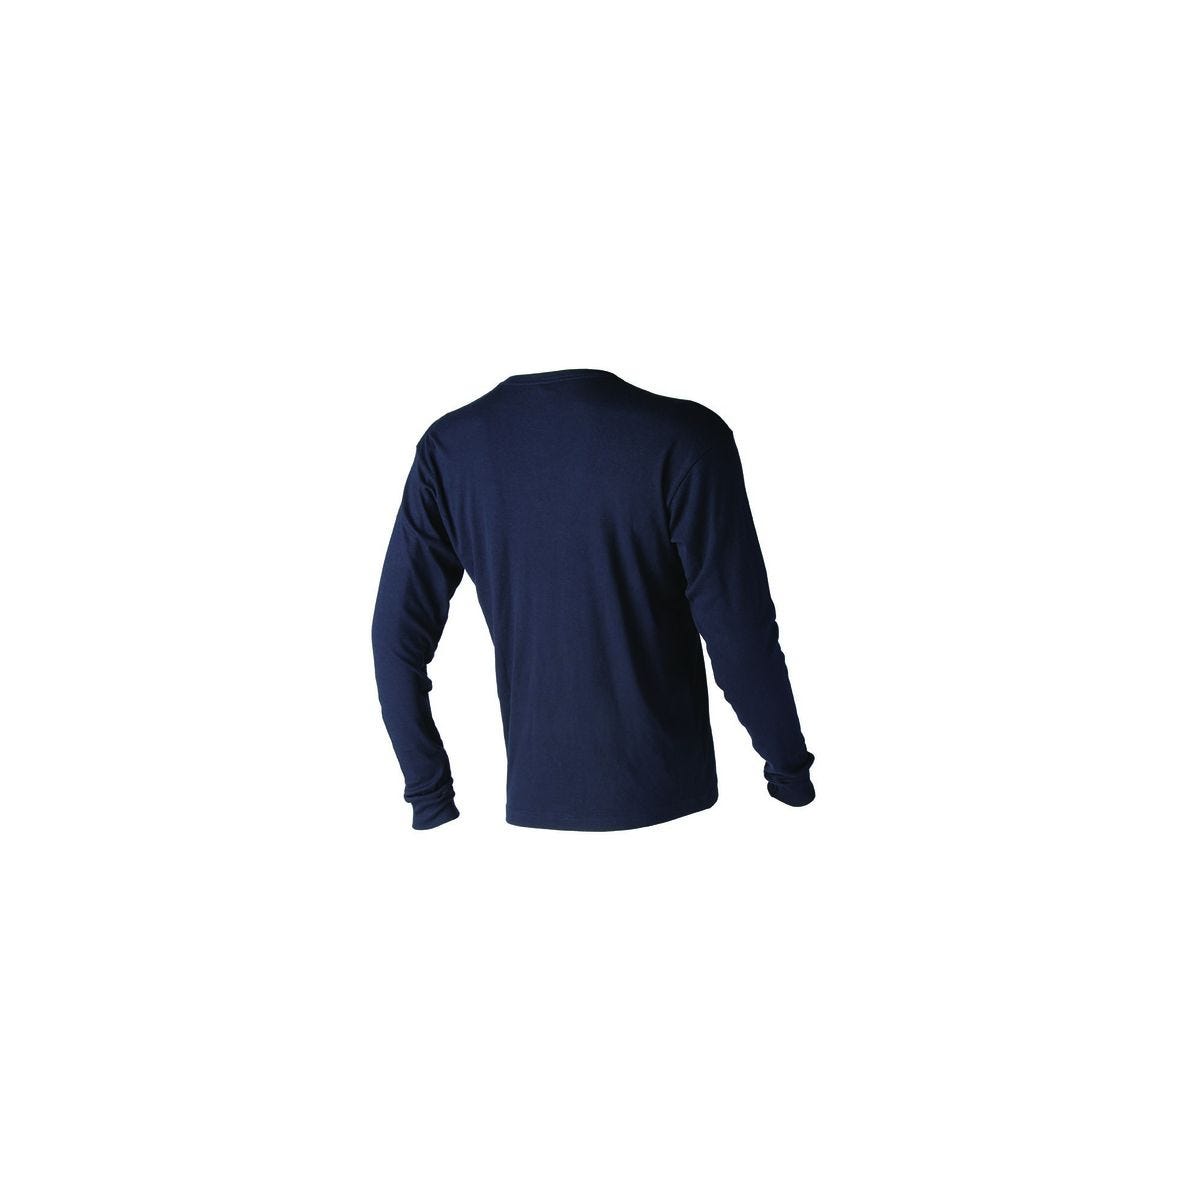 T-shirt SPURR multirisques en 180g/m² - COVERGUARD - Taille L 1